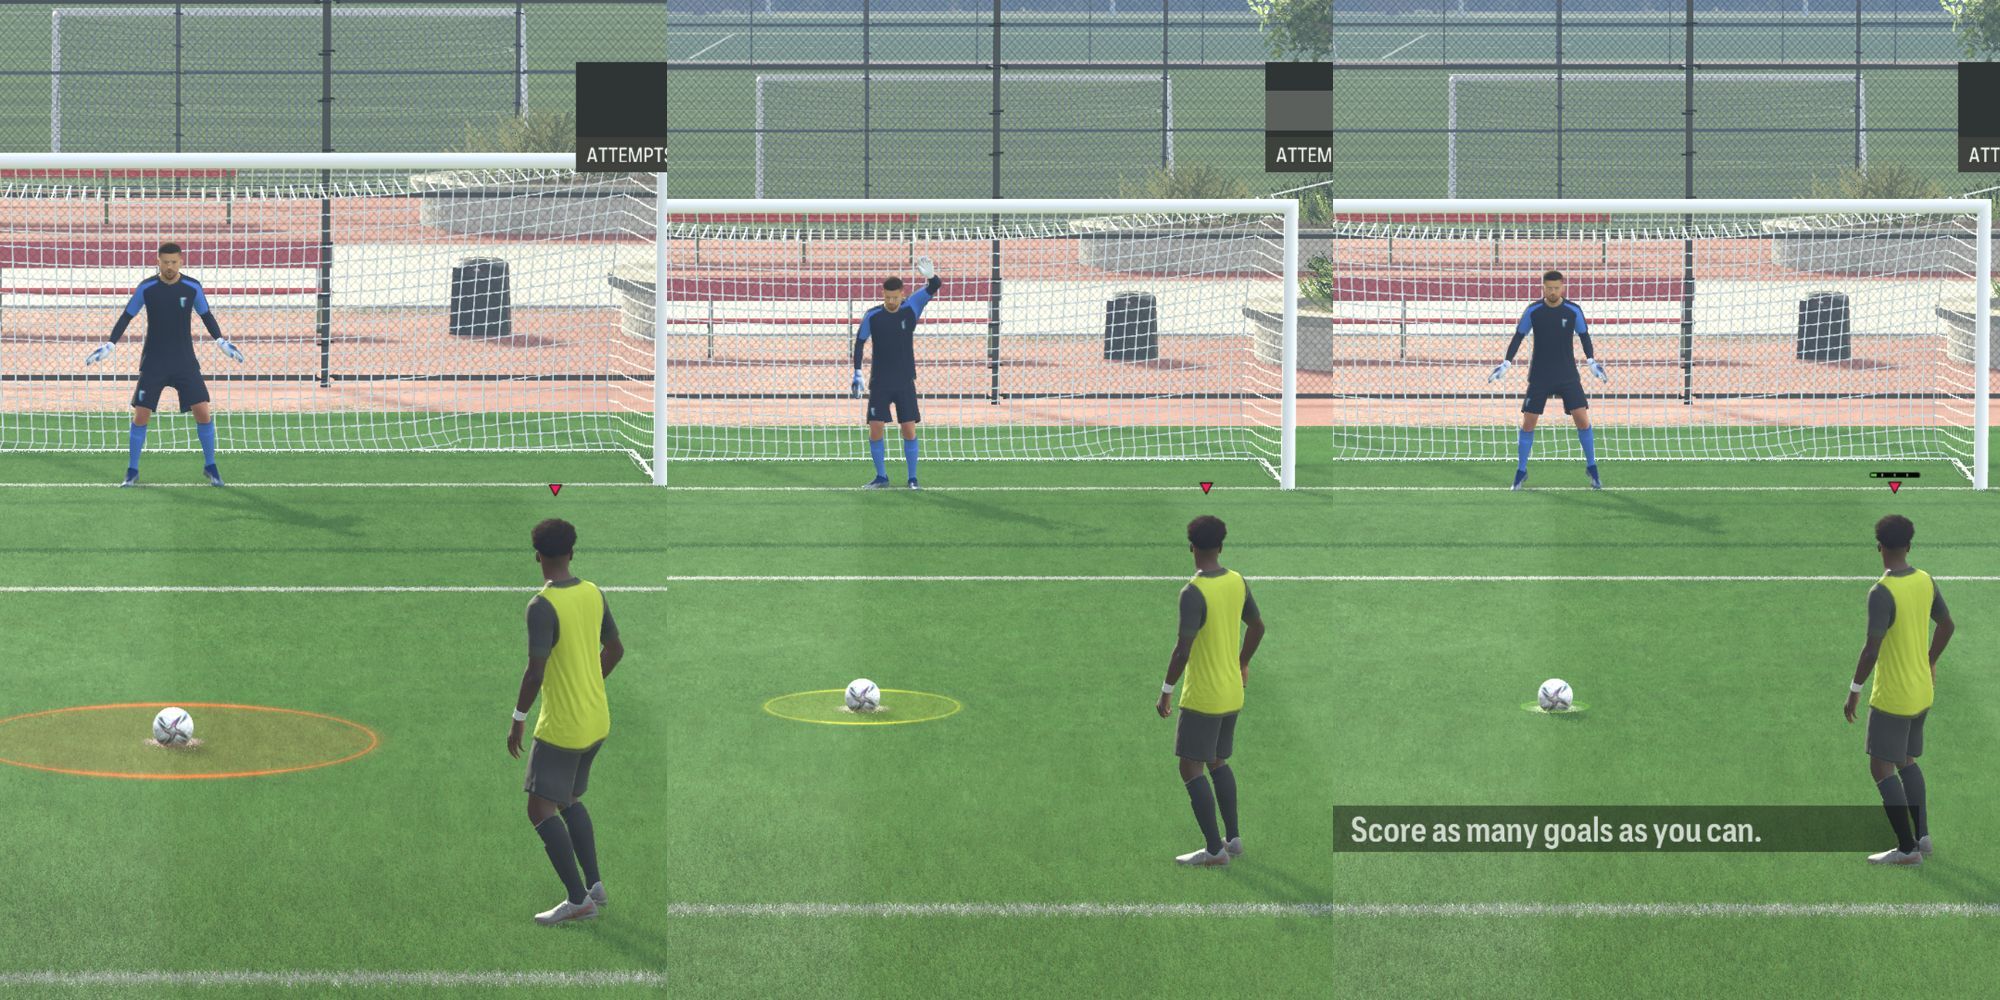 Jugador intentando lanzar un tiro de penalti contra el portero, con tres tamaños diferentes de medidor de precisión.